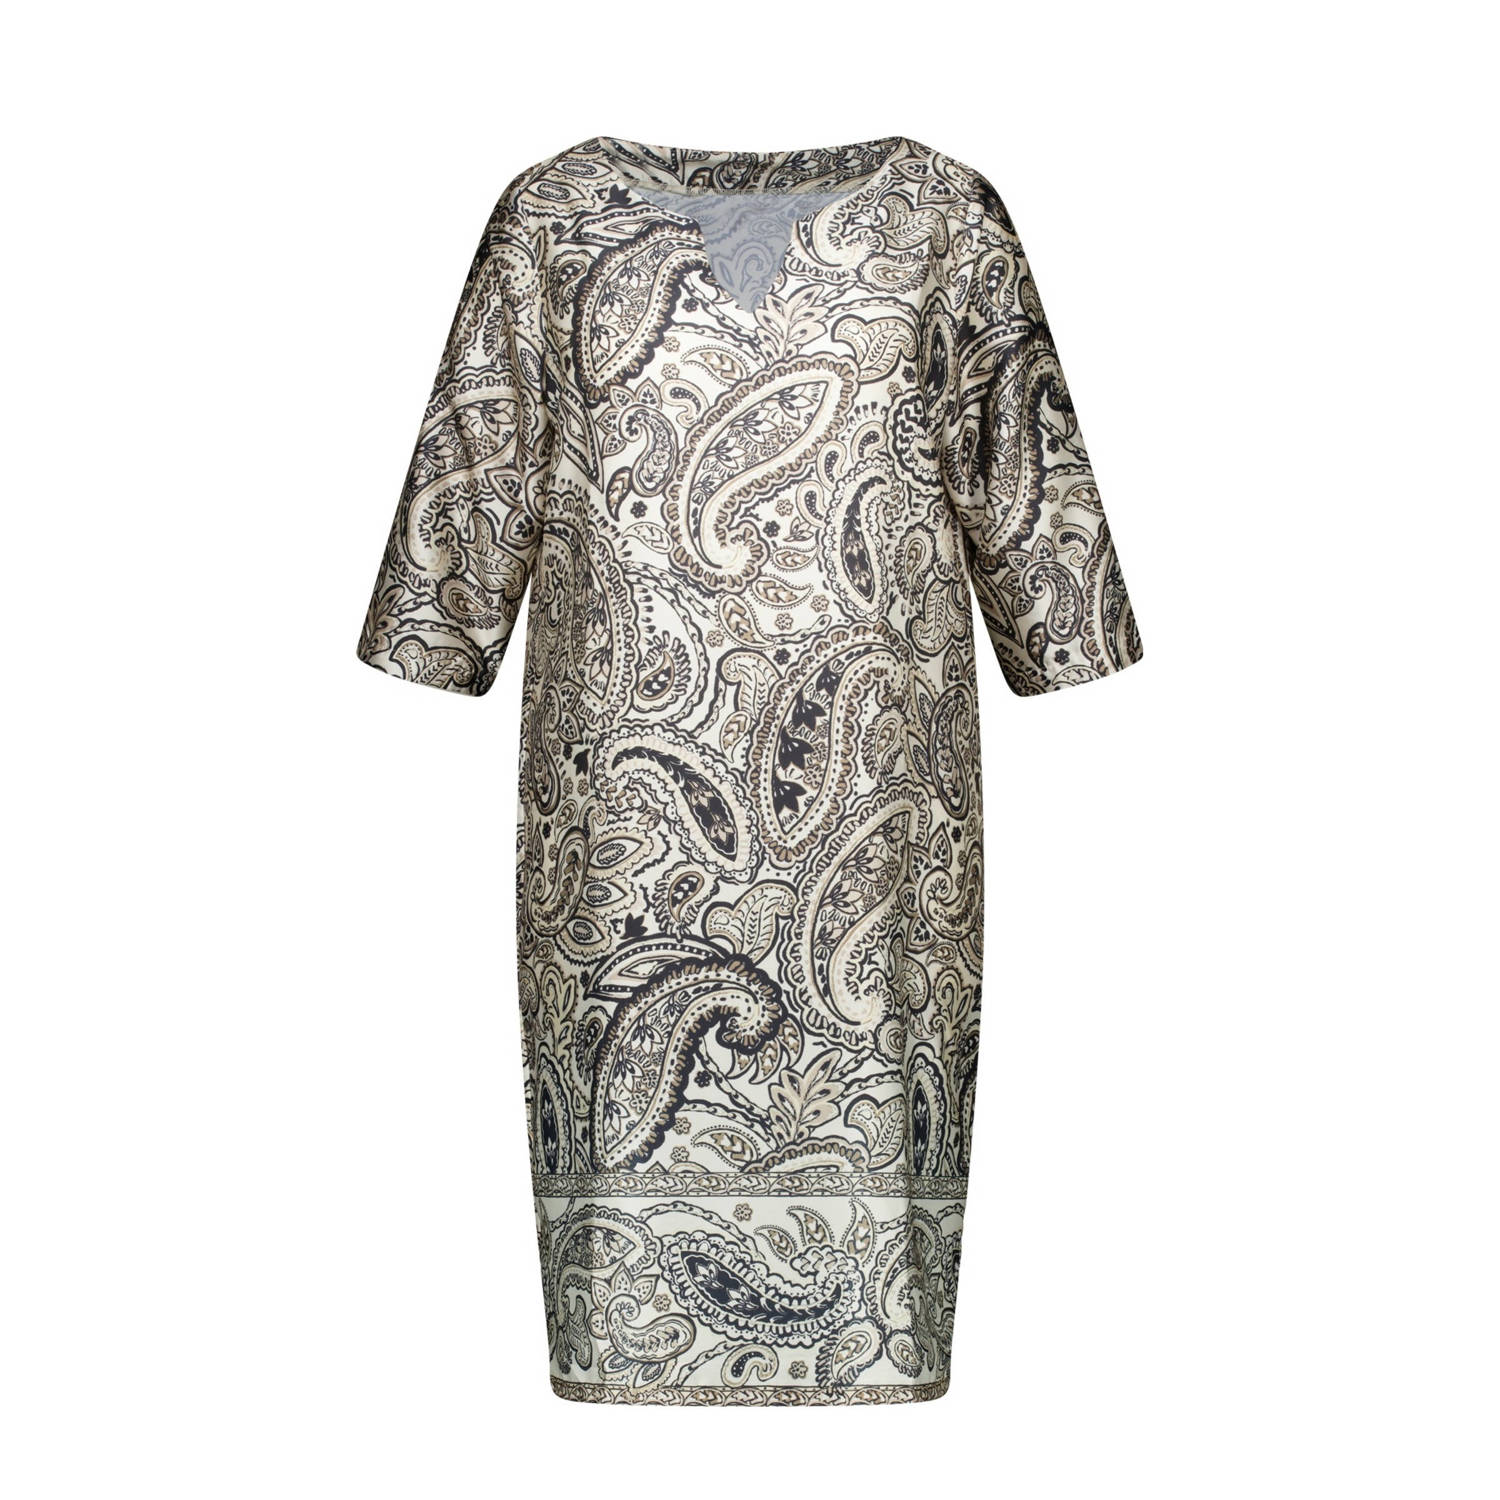 MS Mode jurk met paisleyprint grijsblauw zand beige